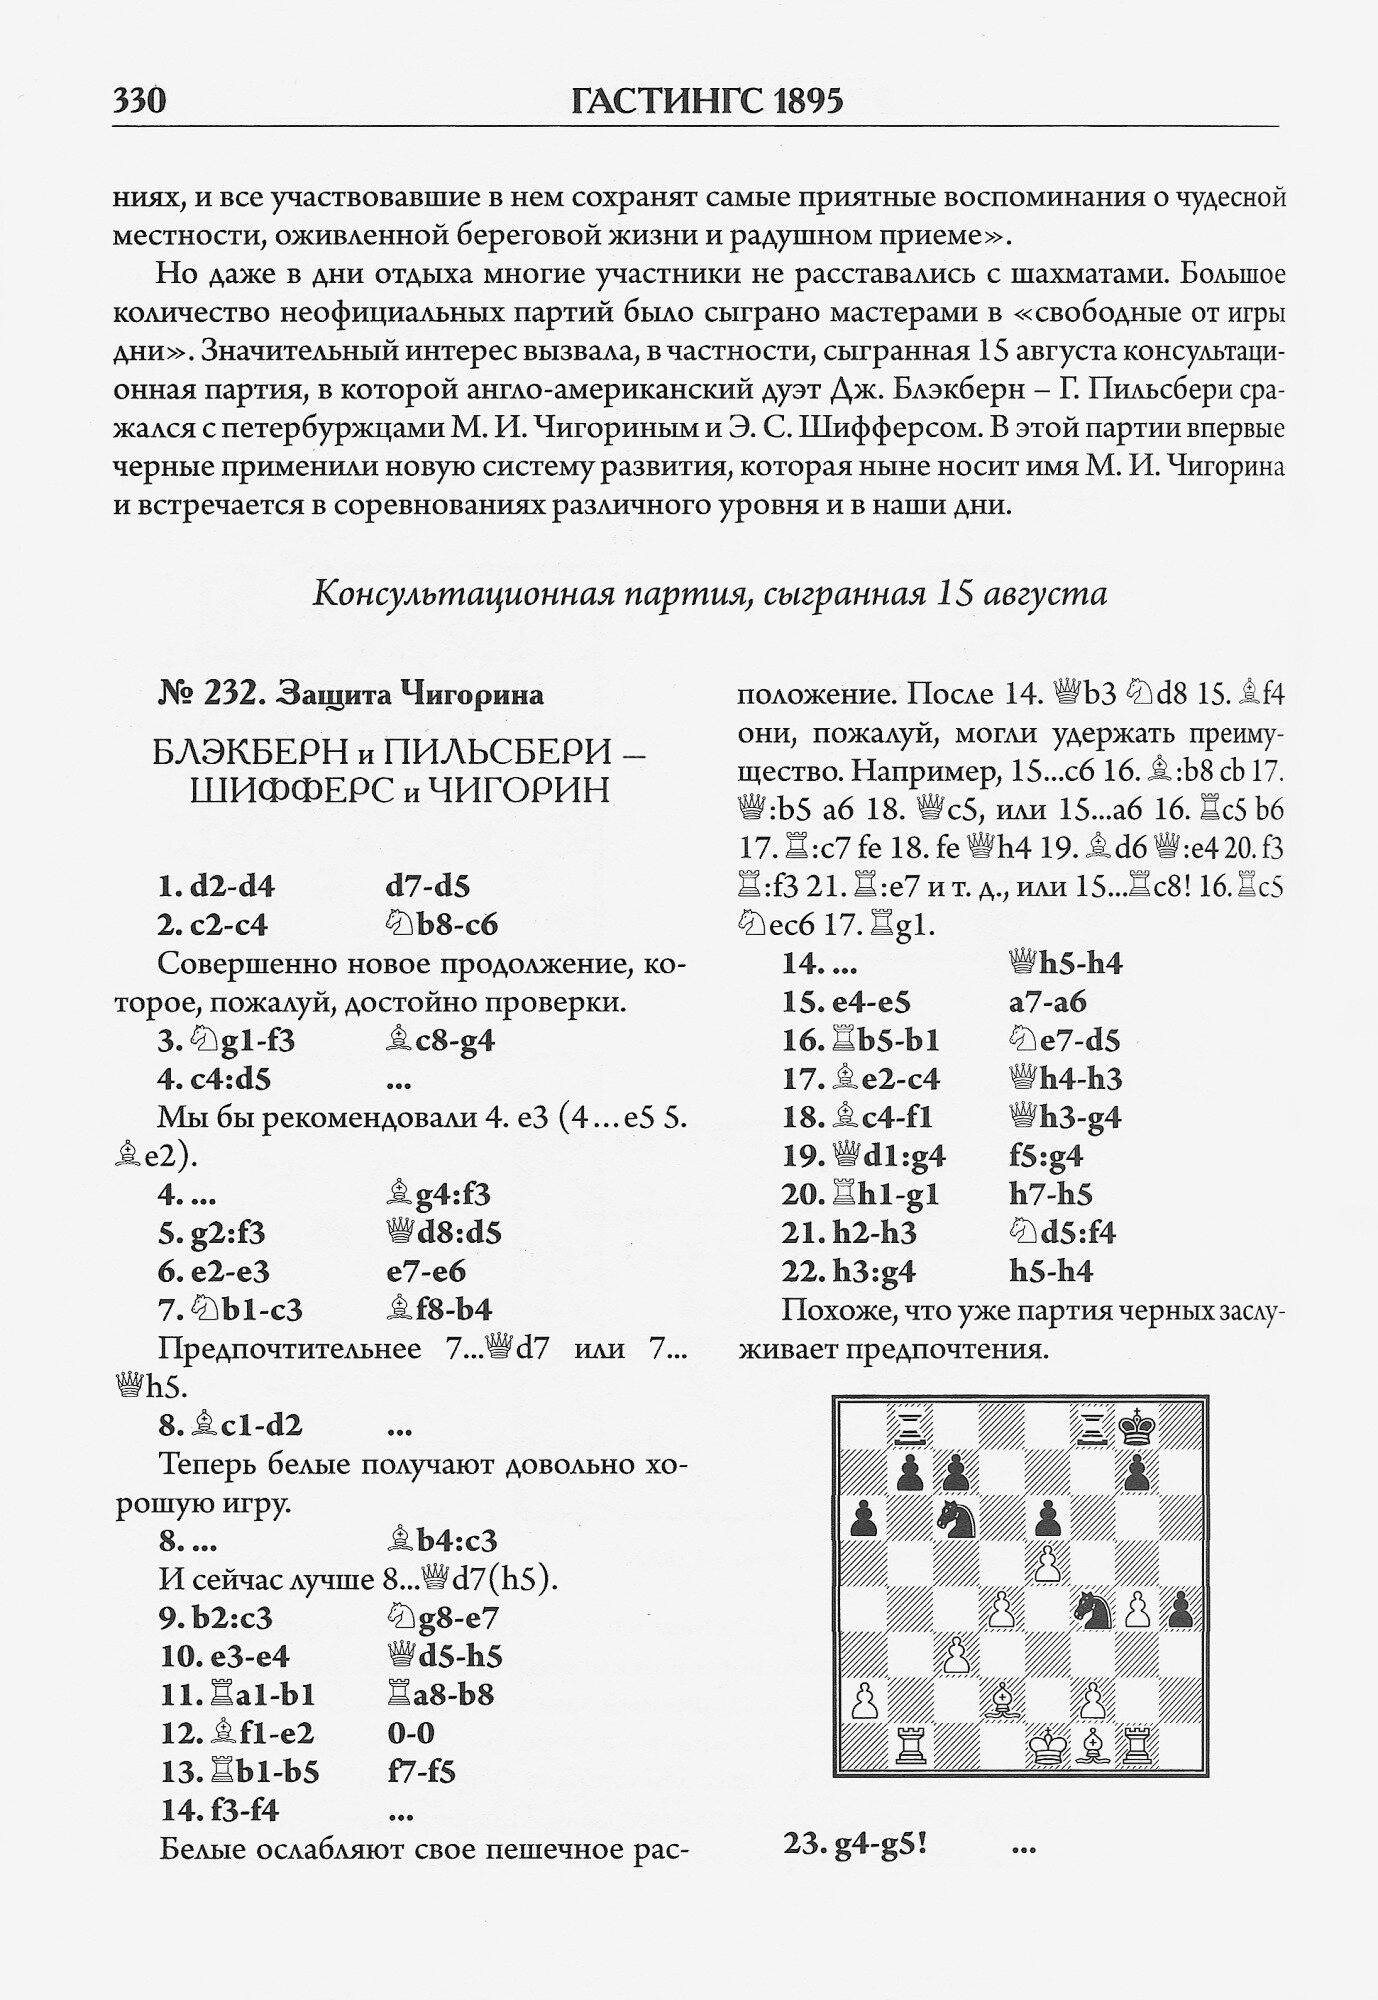 Международный шахматный турнир в Гастингсе 1895 - фото №4